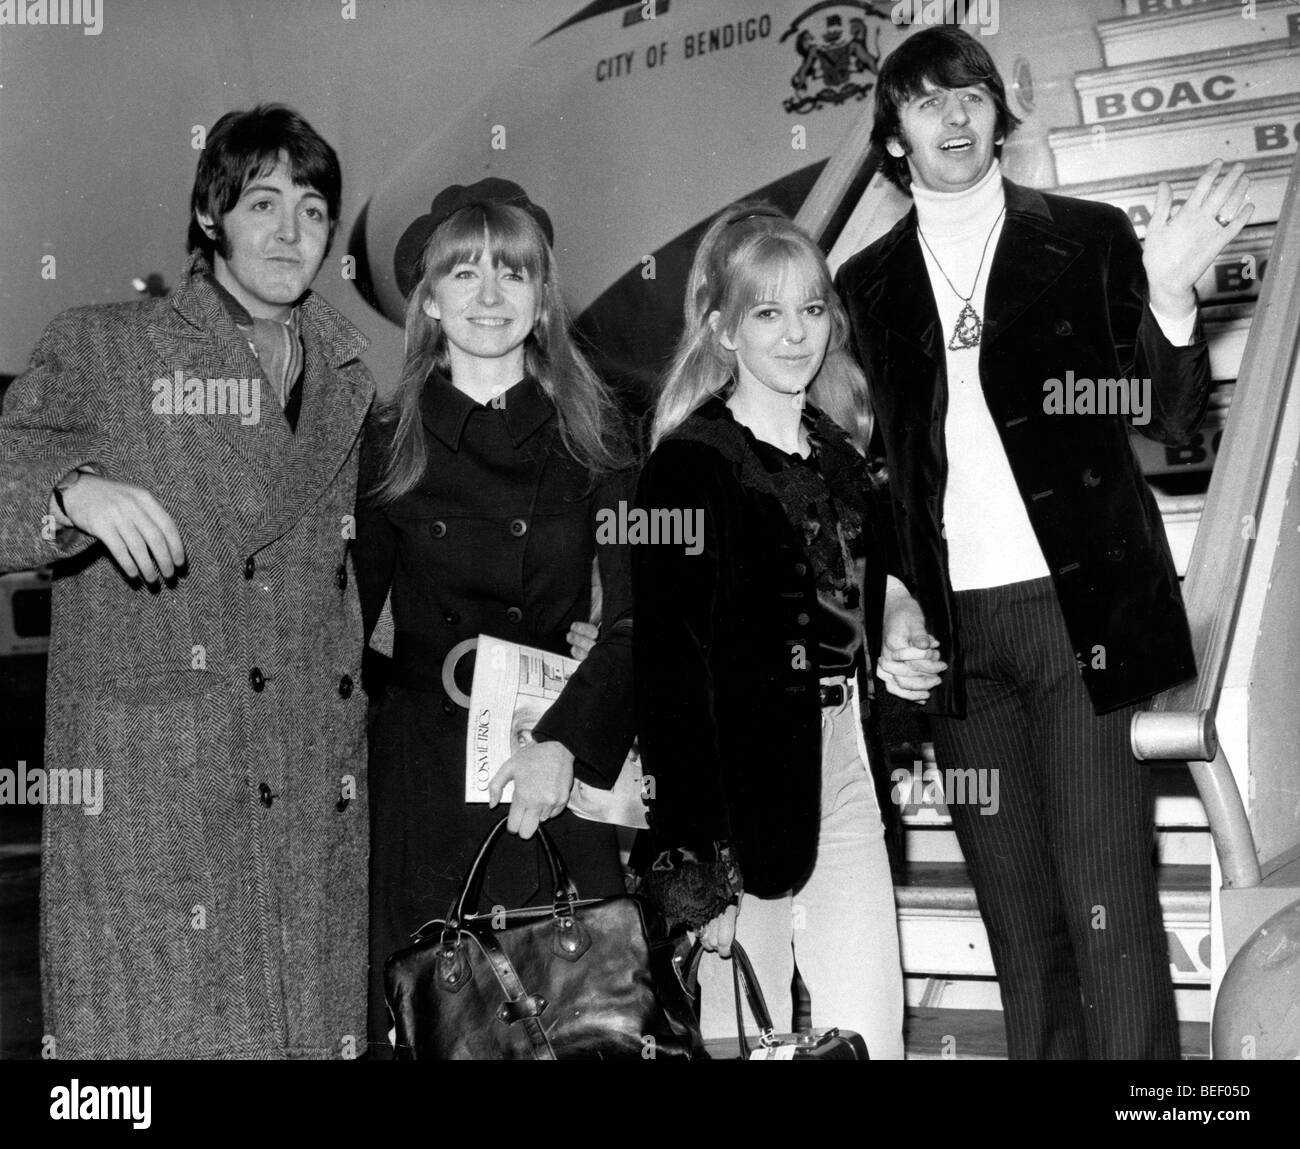 Les Beatles, Paul McCartney et Ringo Starr, gauche, droite, bord d'un avion de la BOAC. Banque D'Images